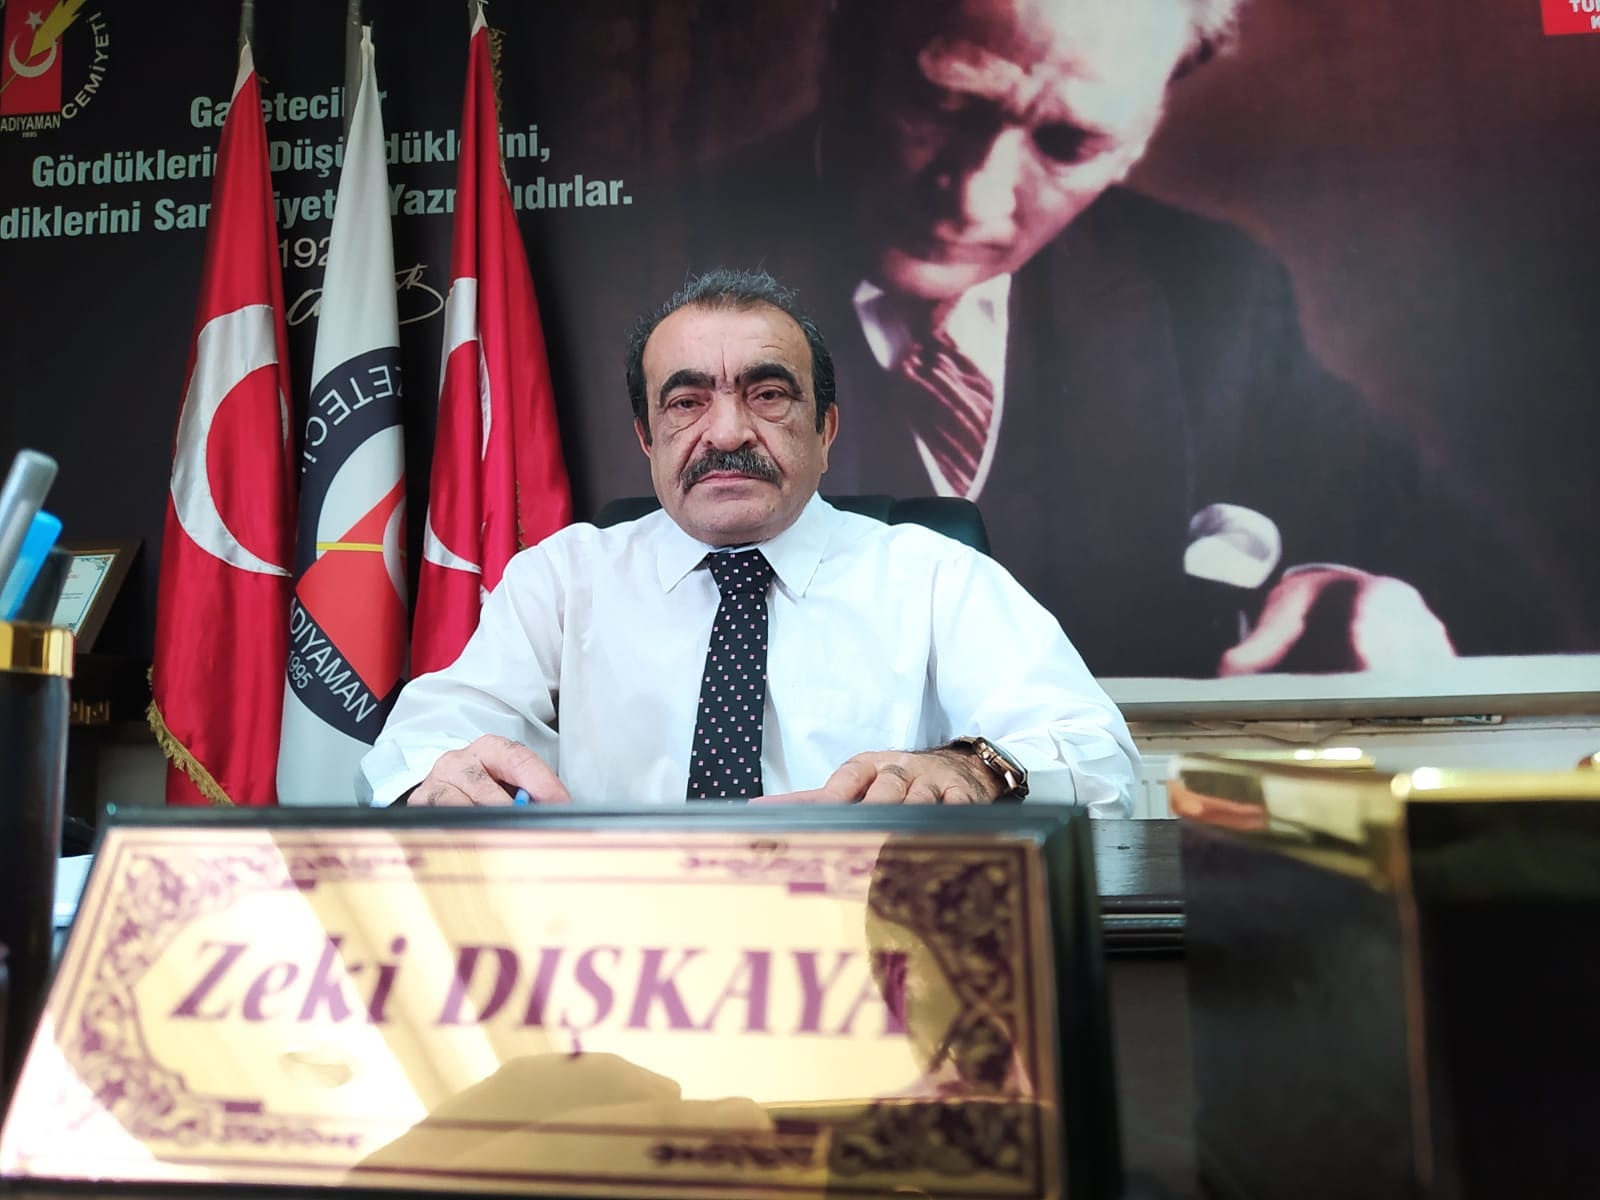 Zeki Dişkaya’nın Mehmet Akif Ersoy Anma Mesajı